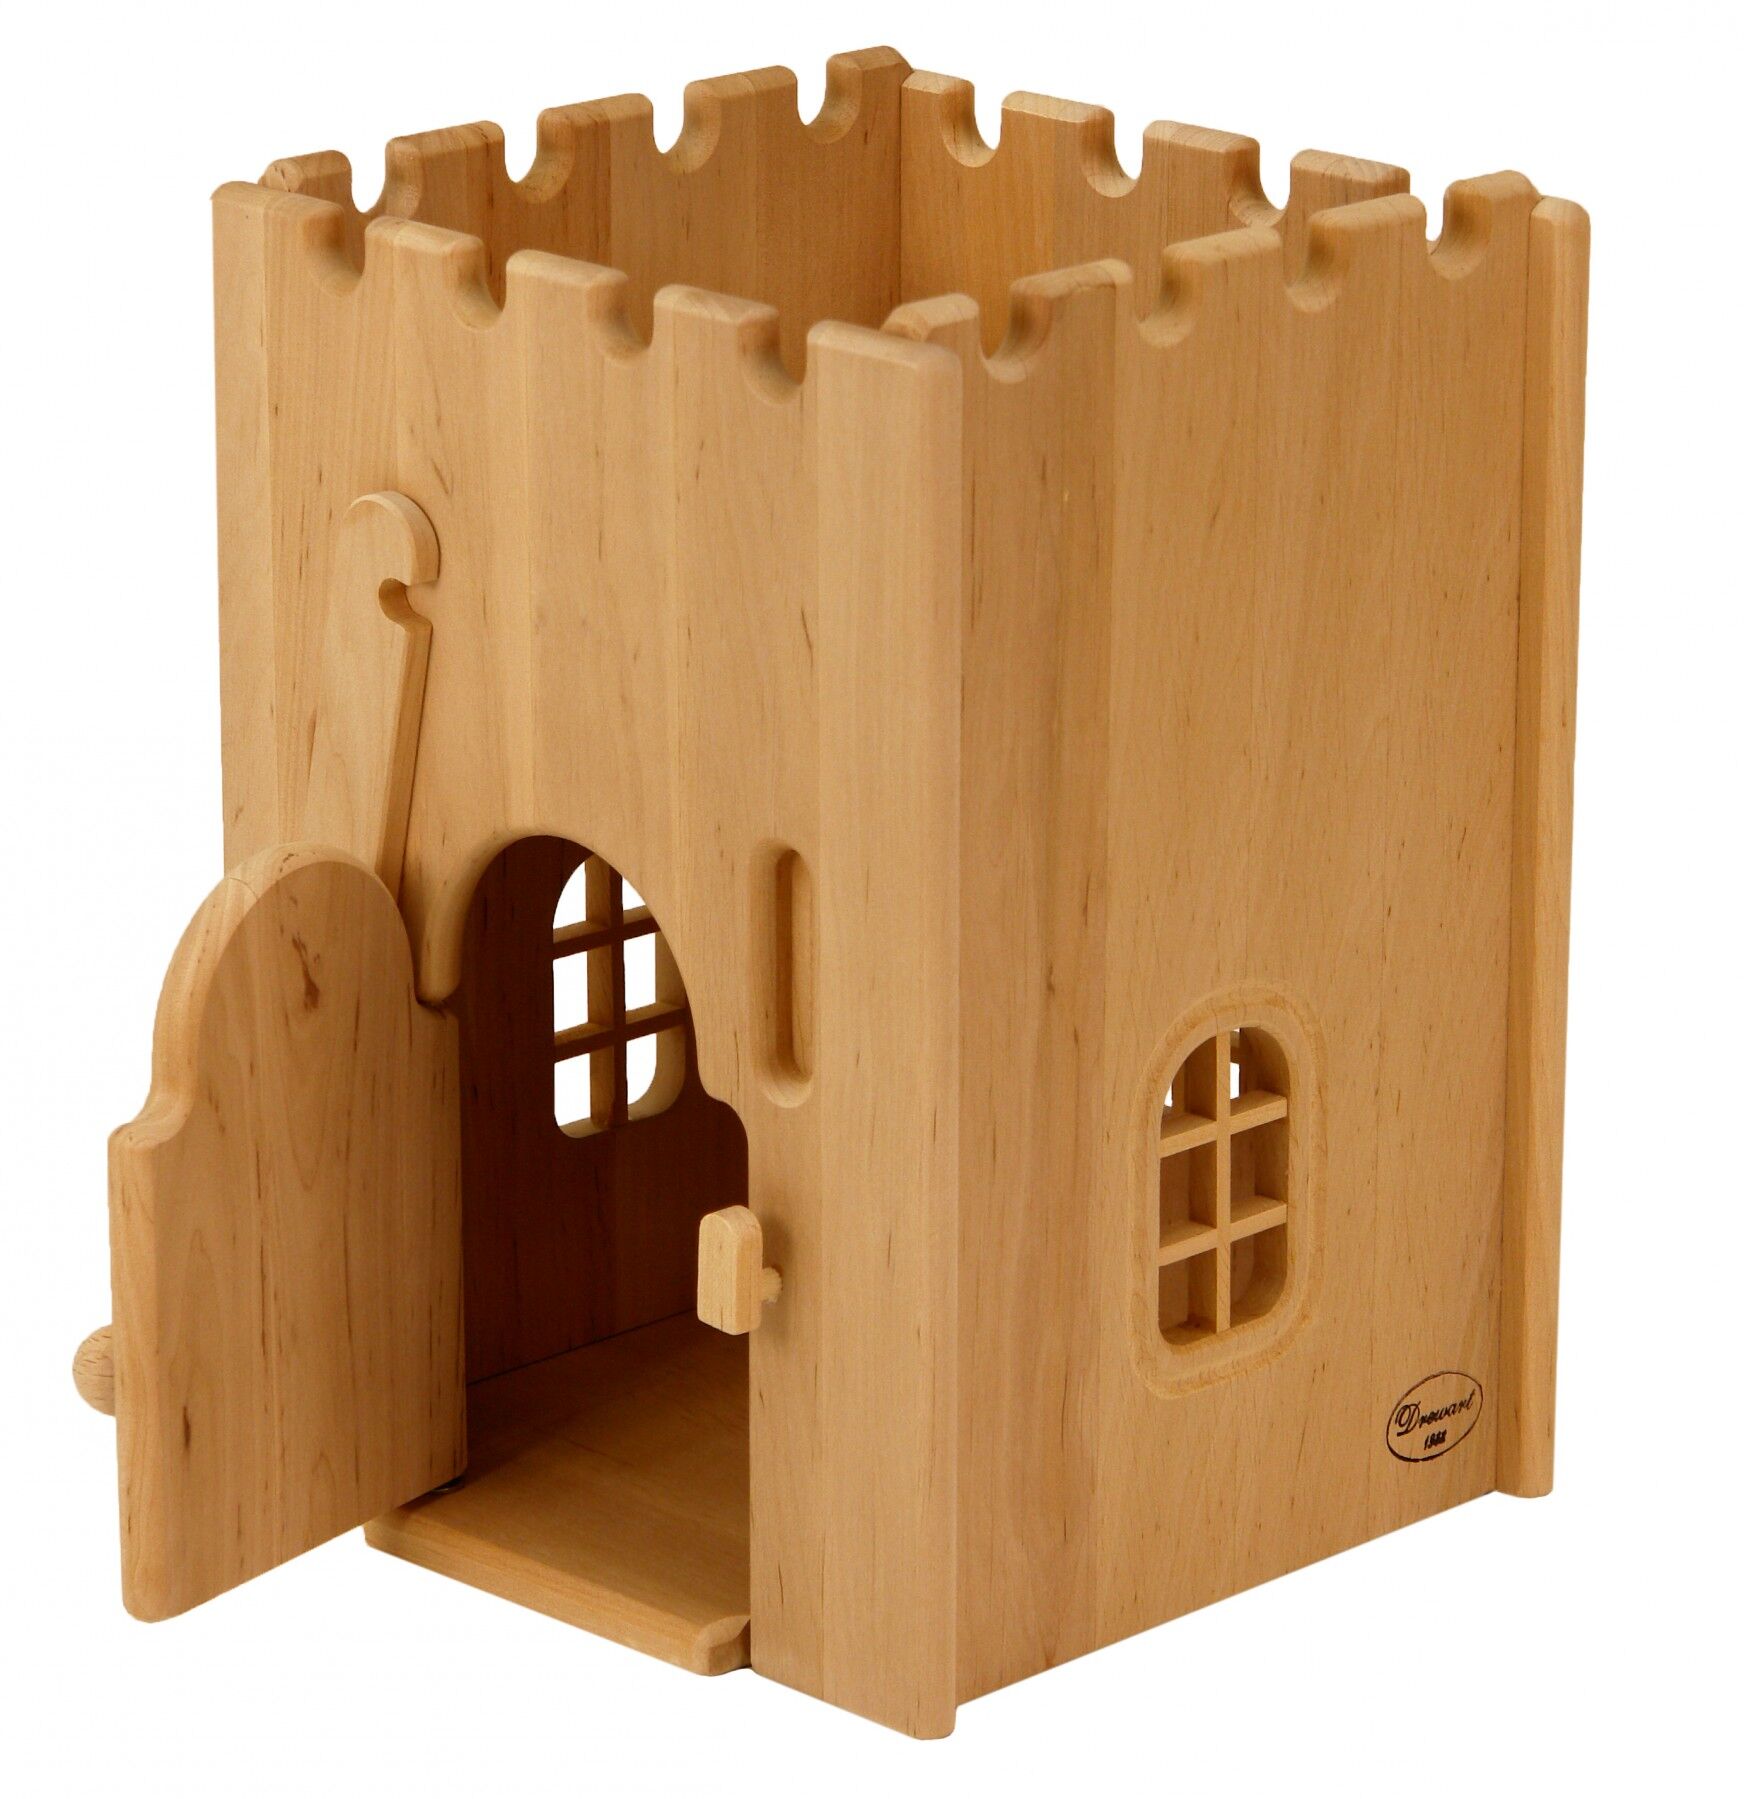 Torre prigione per arricchire il castello medioevale in solido legno 932-1100